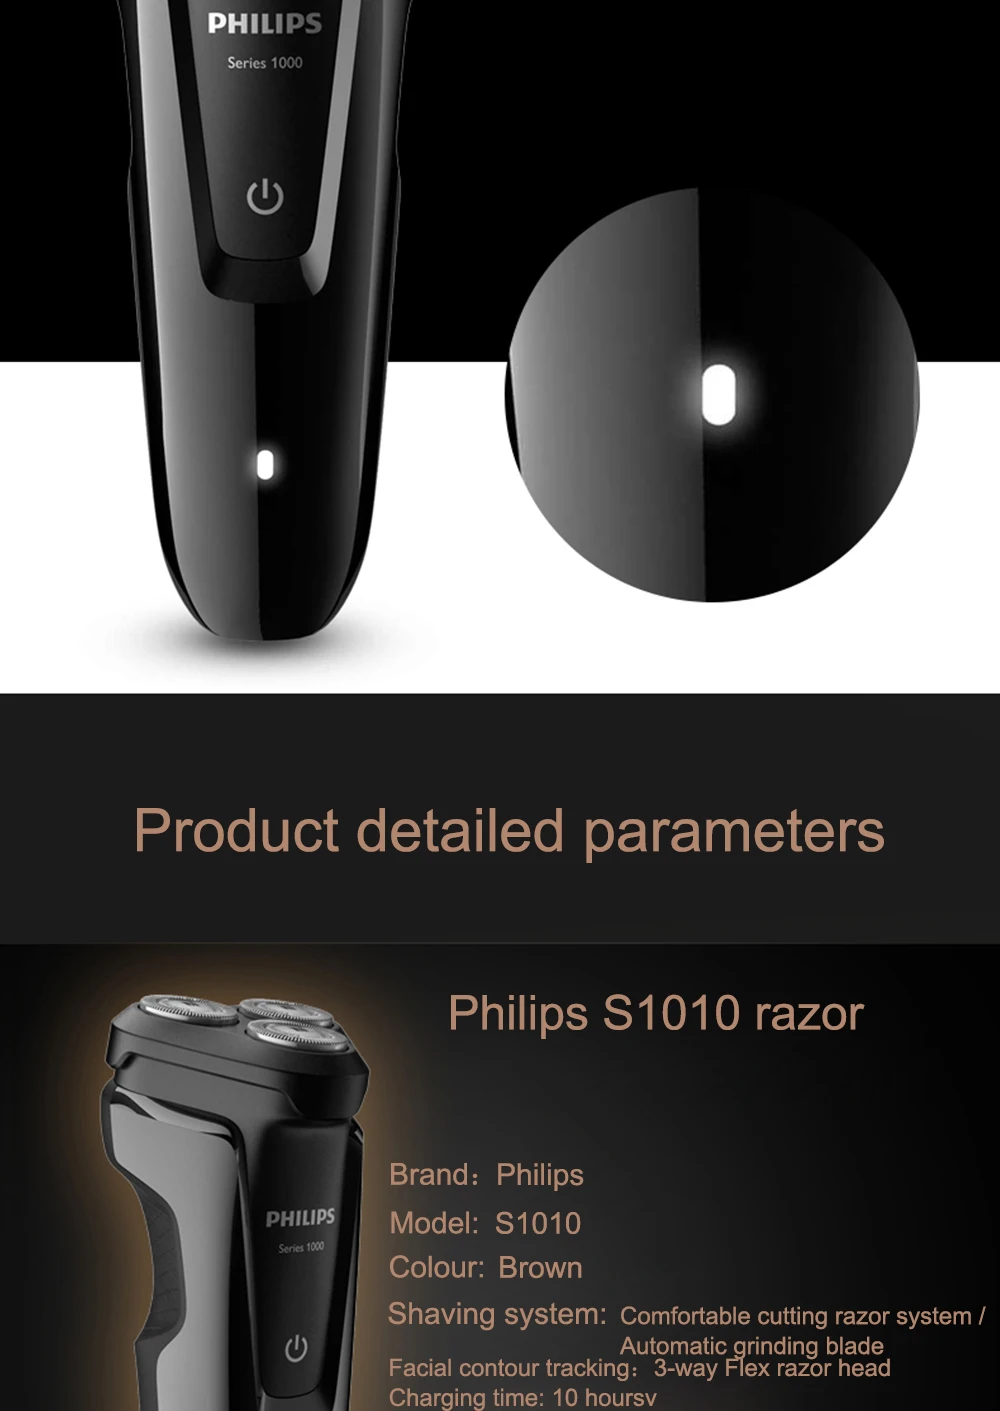 Электробритва Philips S1010 вращающаяся перезаряжаемая для мытья тела с тройными плавающими лезвиями для мужской электрической бритвы с индикатором